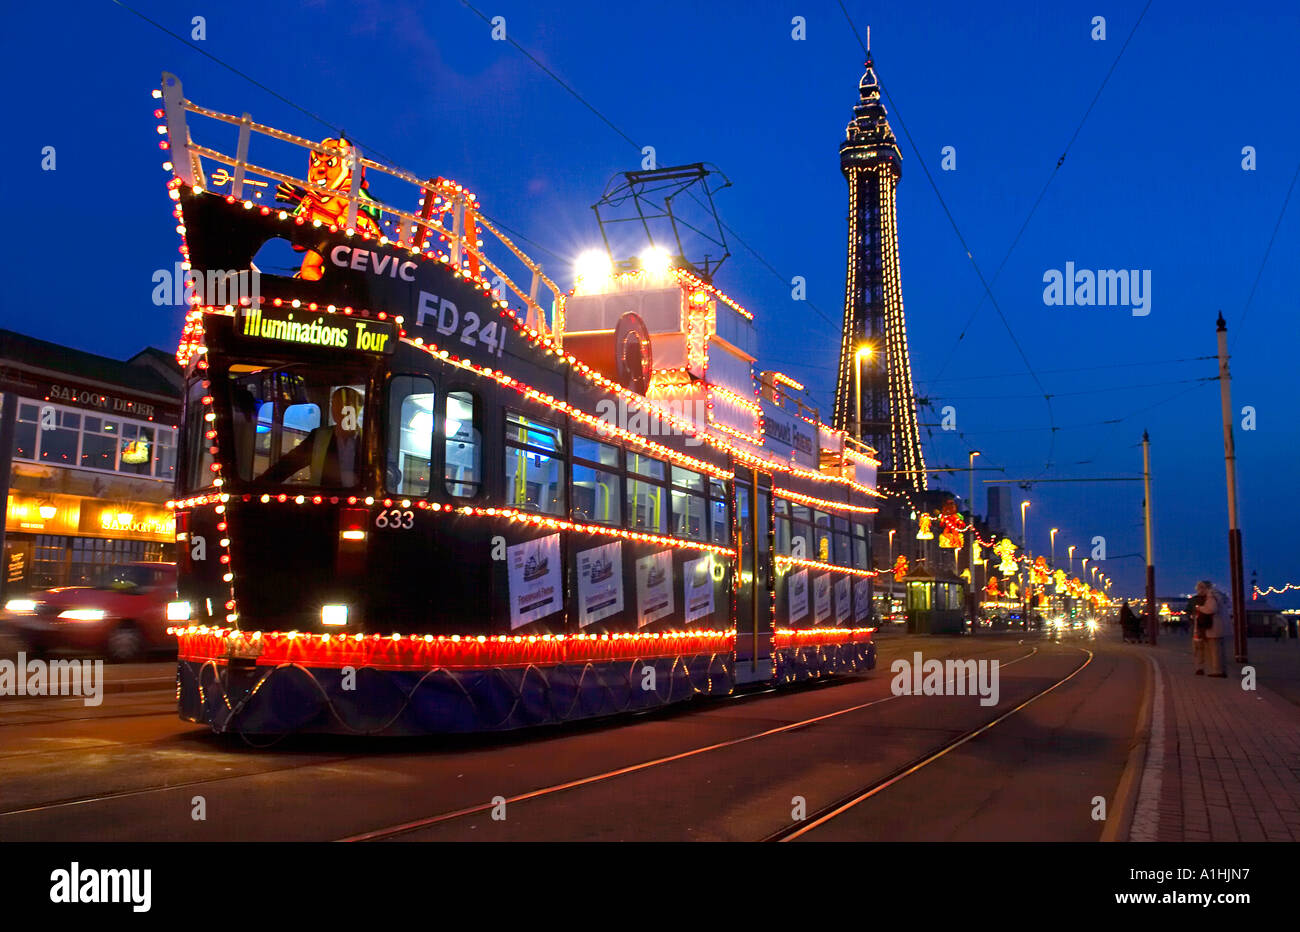 Boot förmigen Straßenbahn auf der Esplanade bei Nacht Blackpool England uk Stockfoto